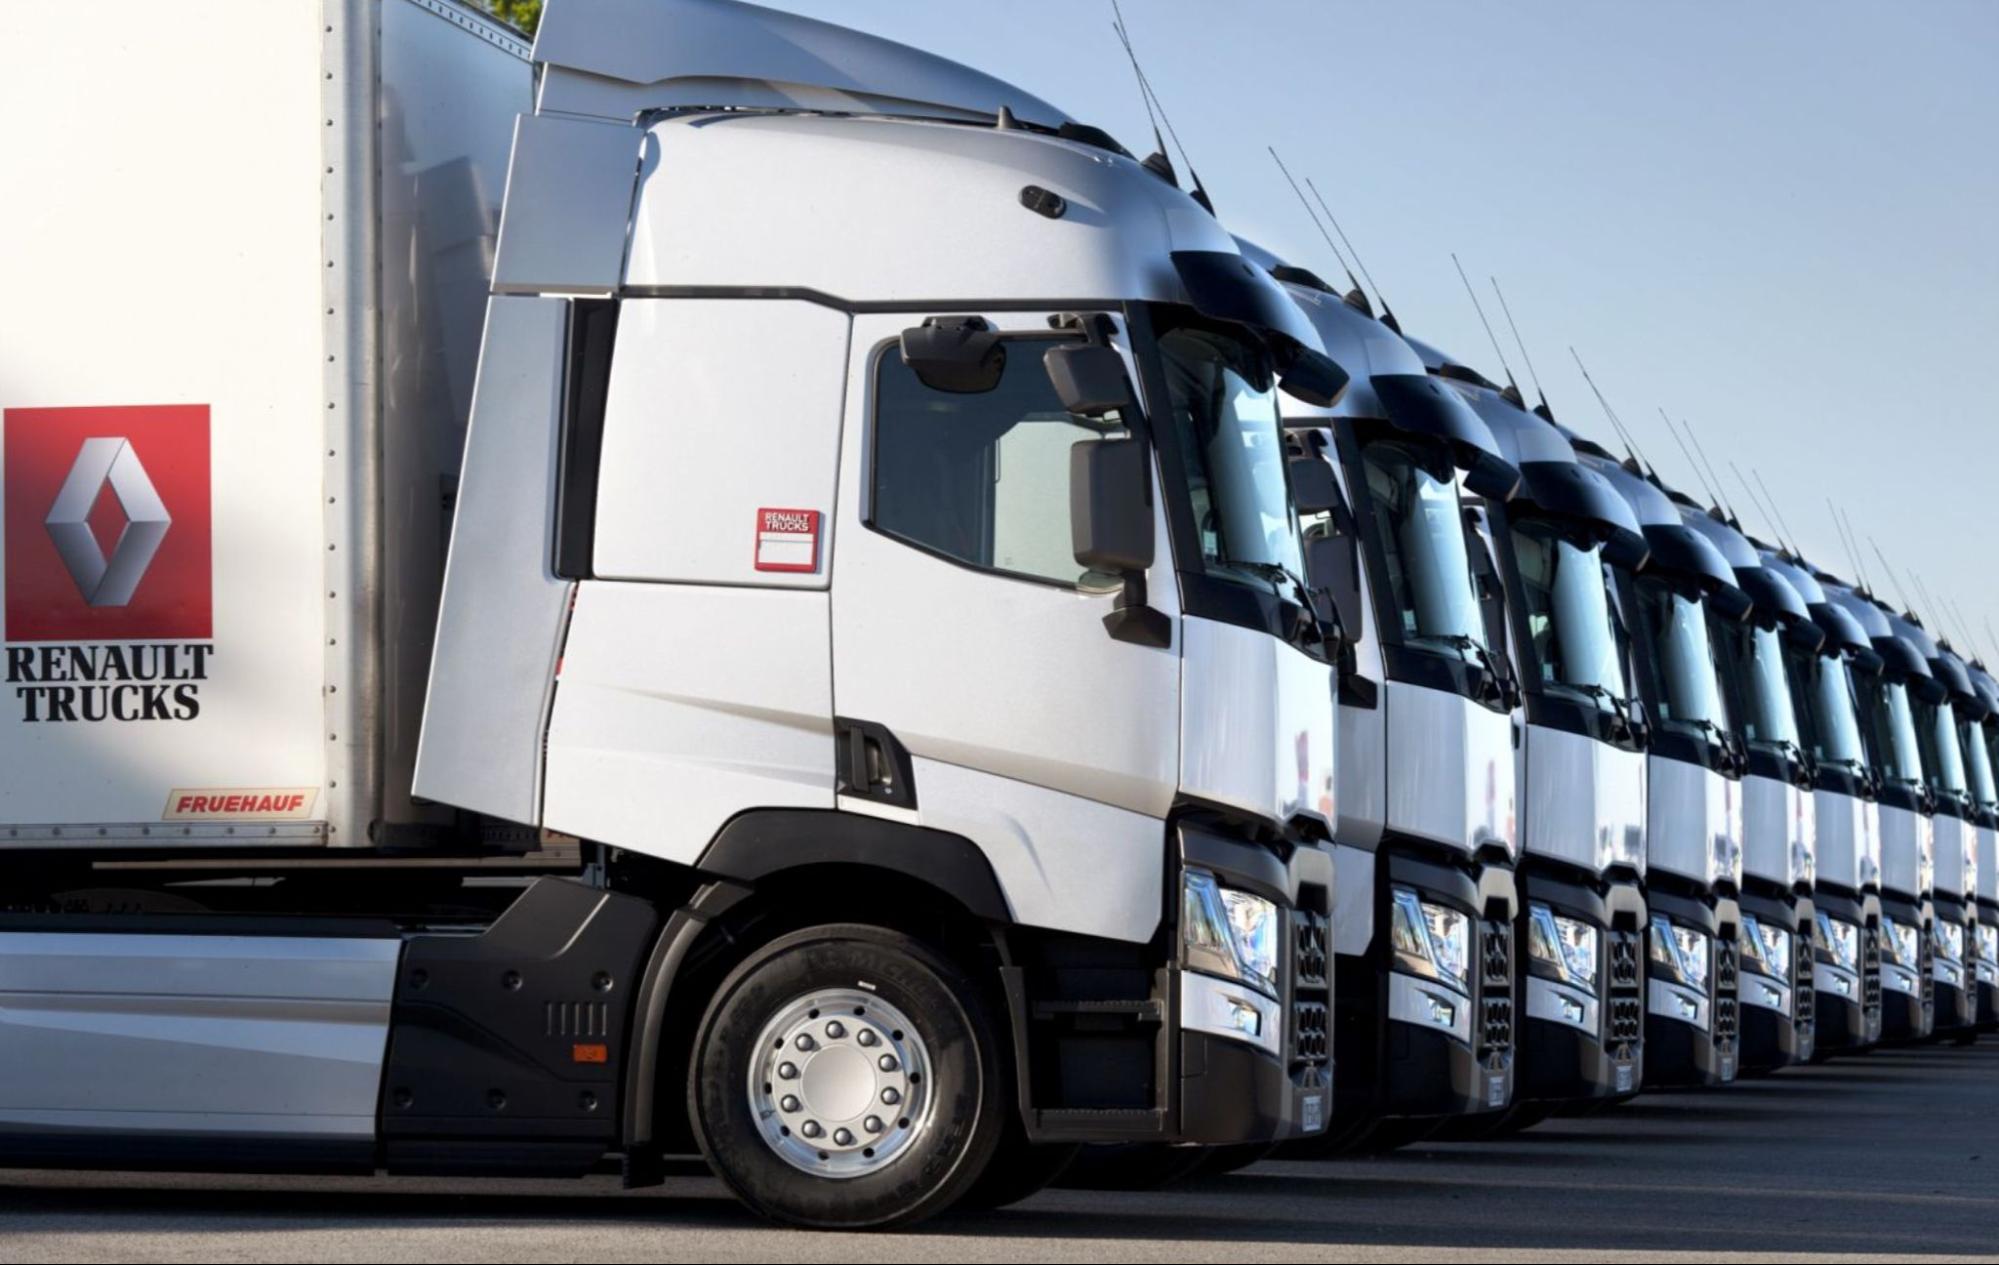 Запчасти для грузовых автомобилей Renault: качество и надежность